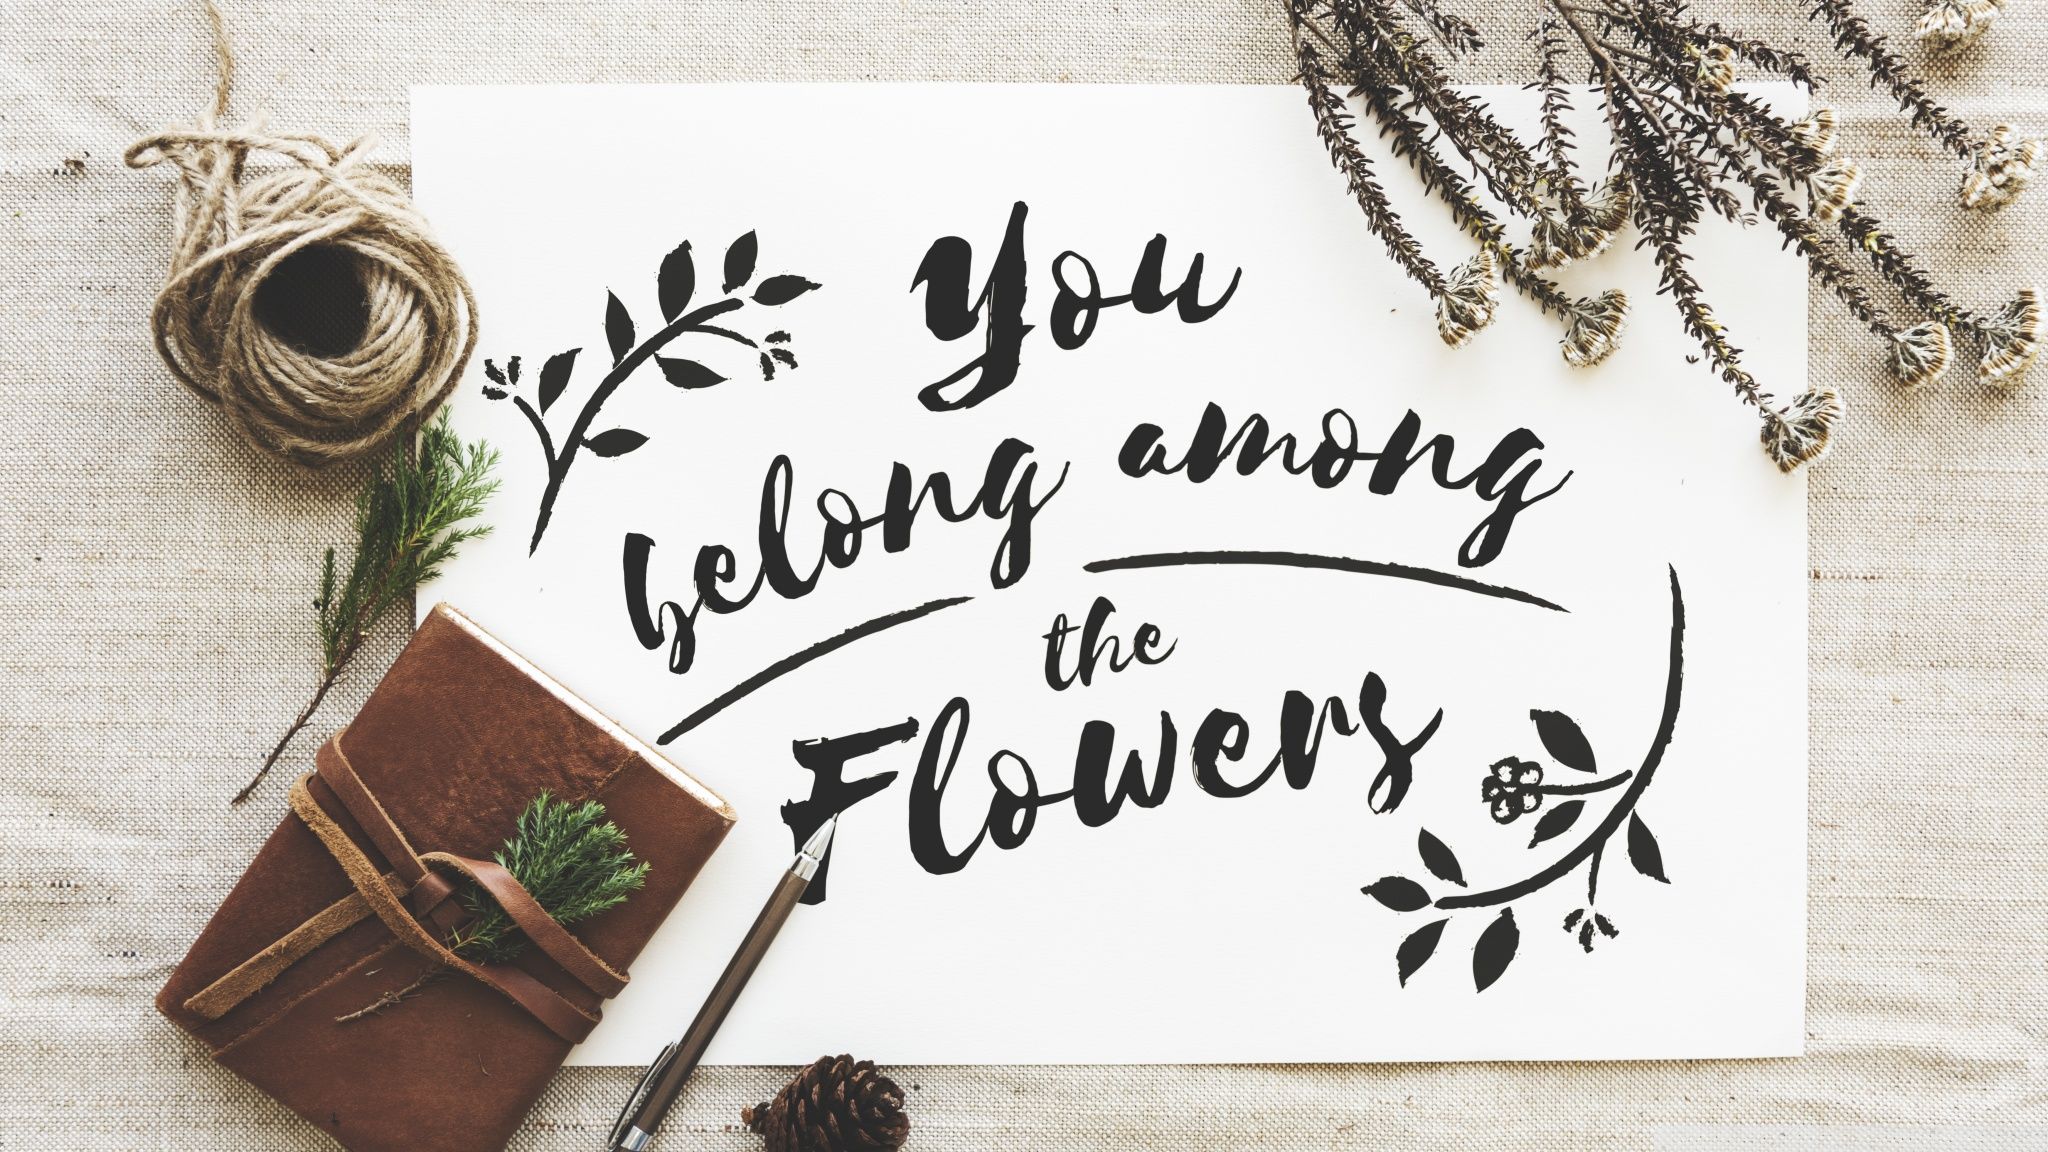 You belong among the flowers. - Calligraphy